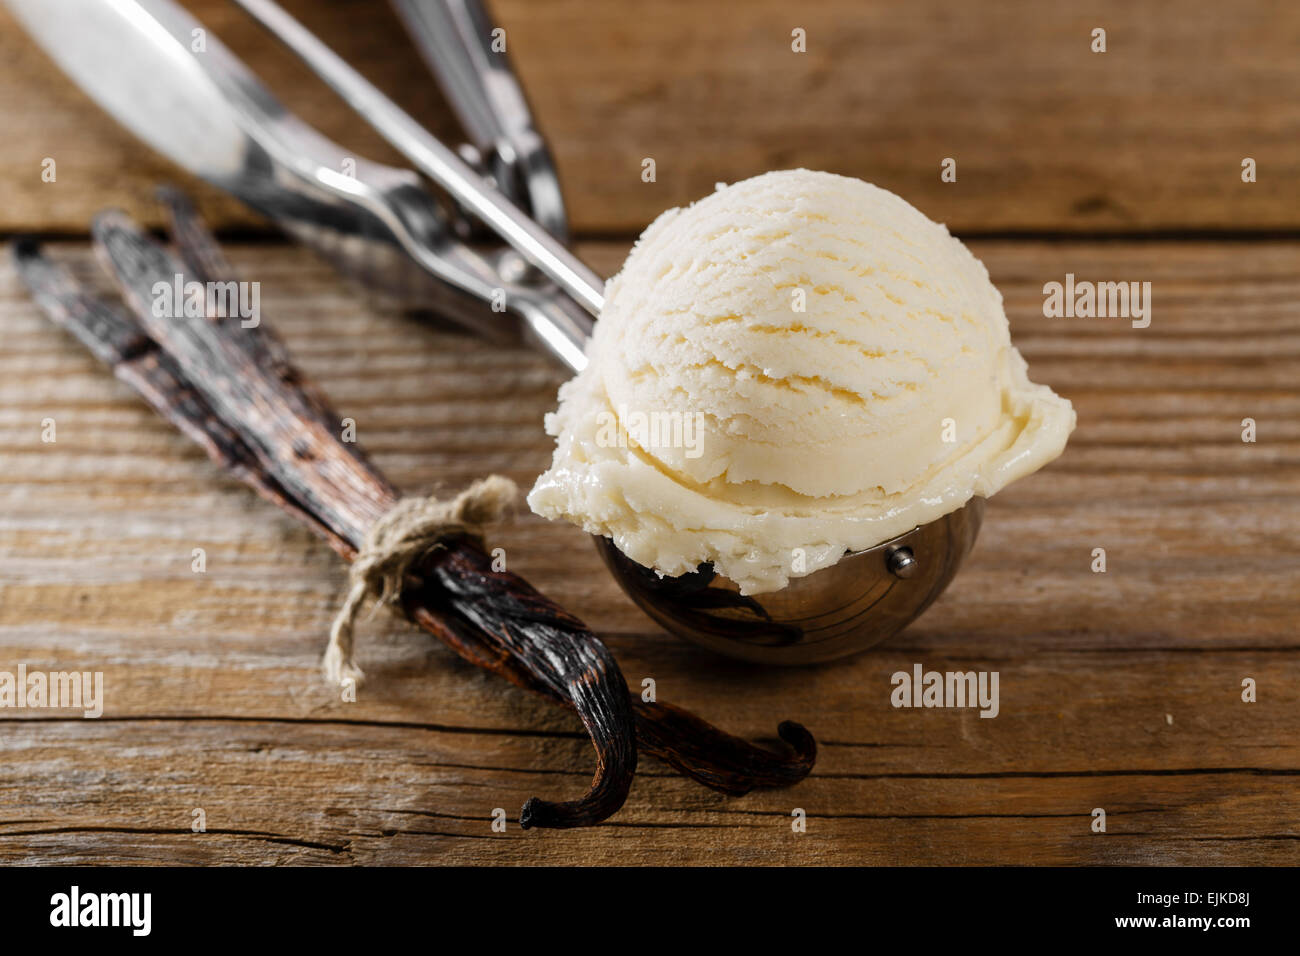 Boule de glace vanille dans une cuillère scoop Photo Stock - Alamy